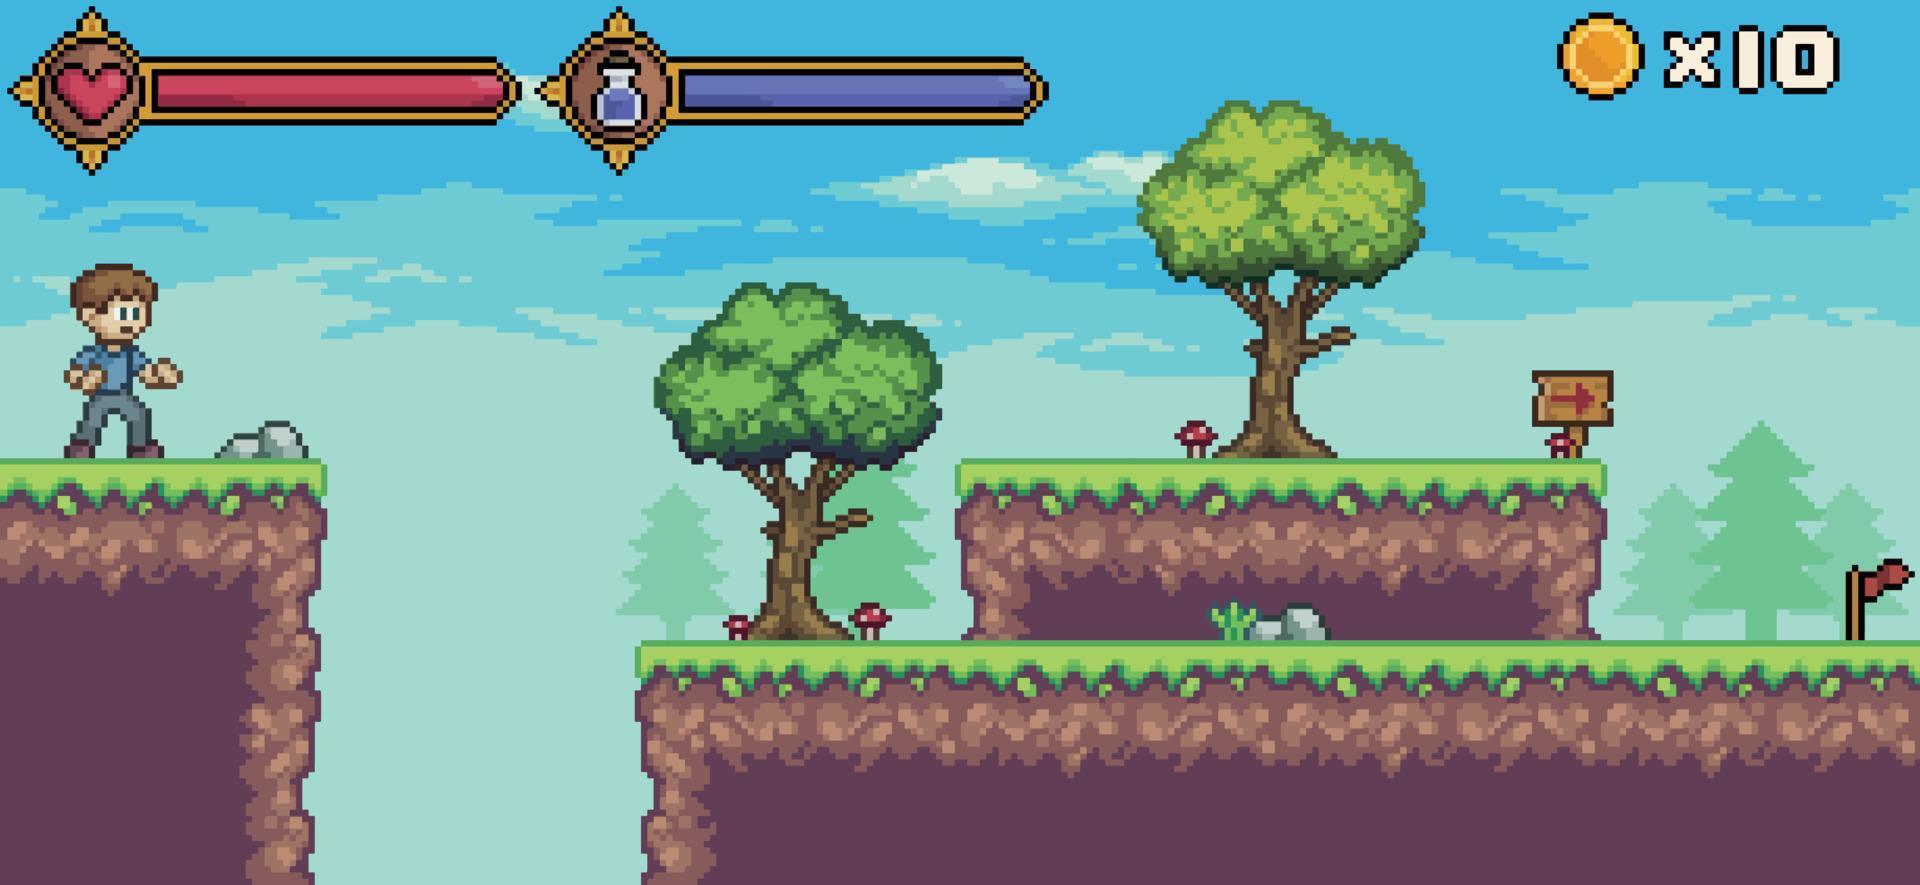 cena de jogo de pixel art com personagem, barra de vida e mana, árvore, fundo vetorial de nuvem para jogo de 8 bits vetor